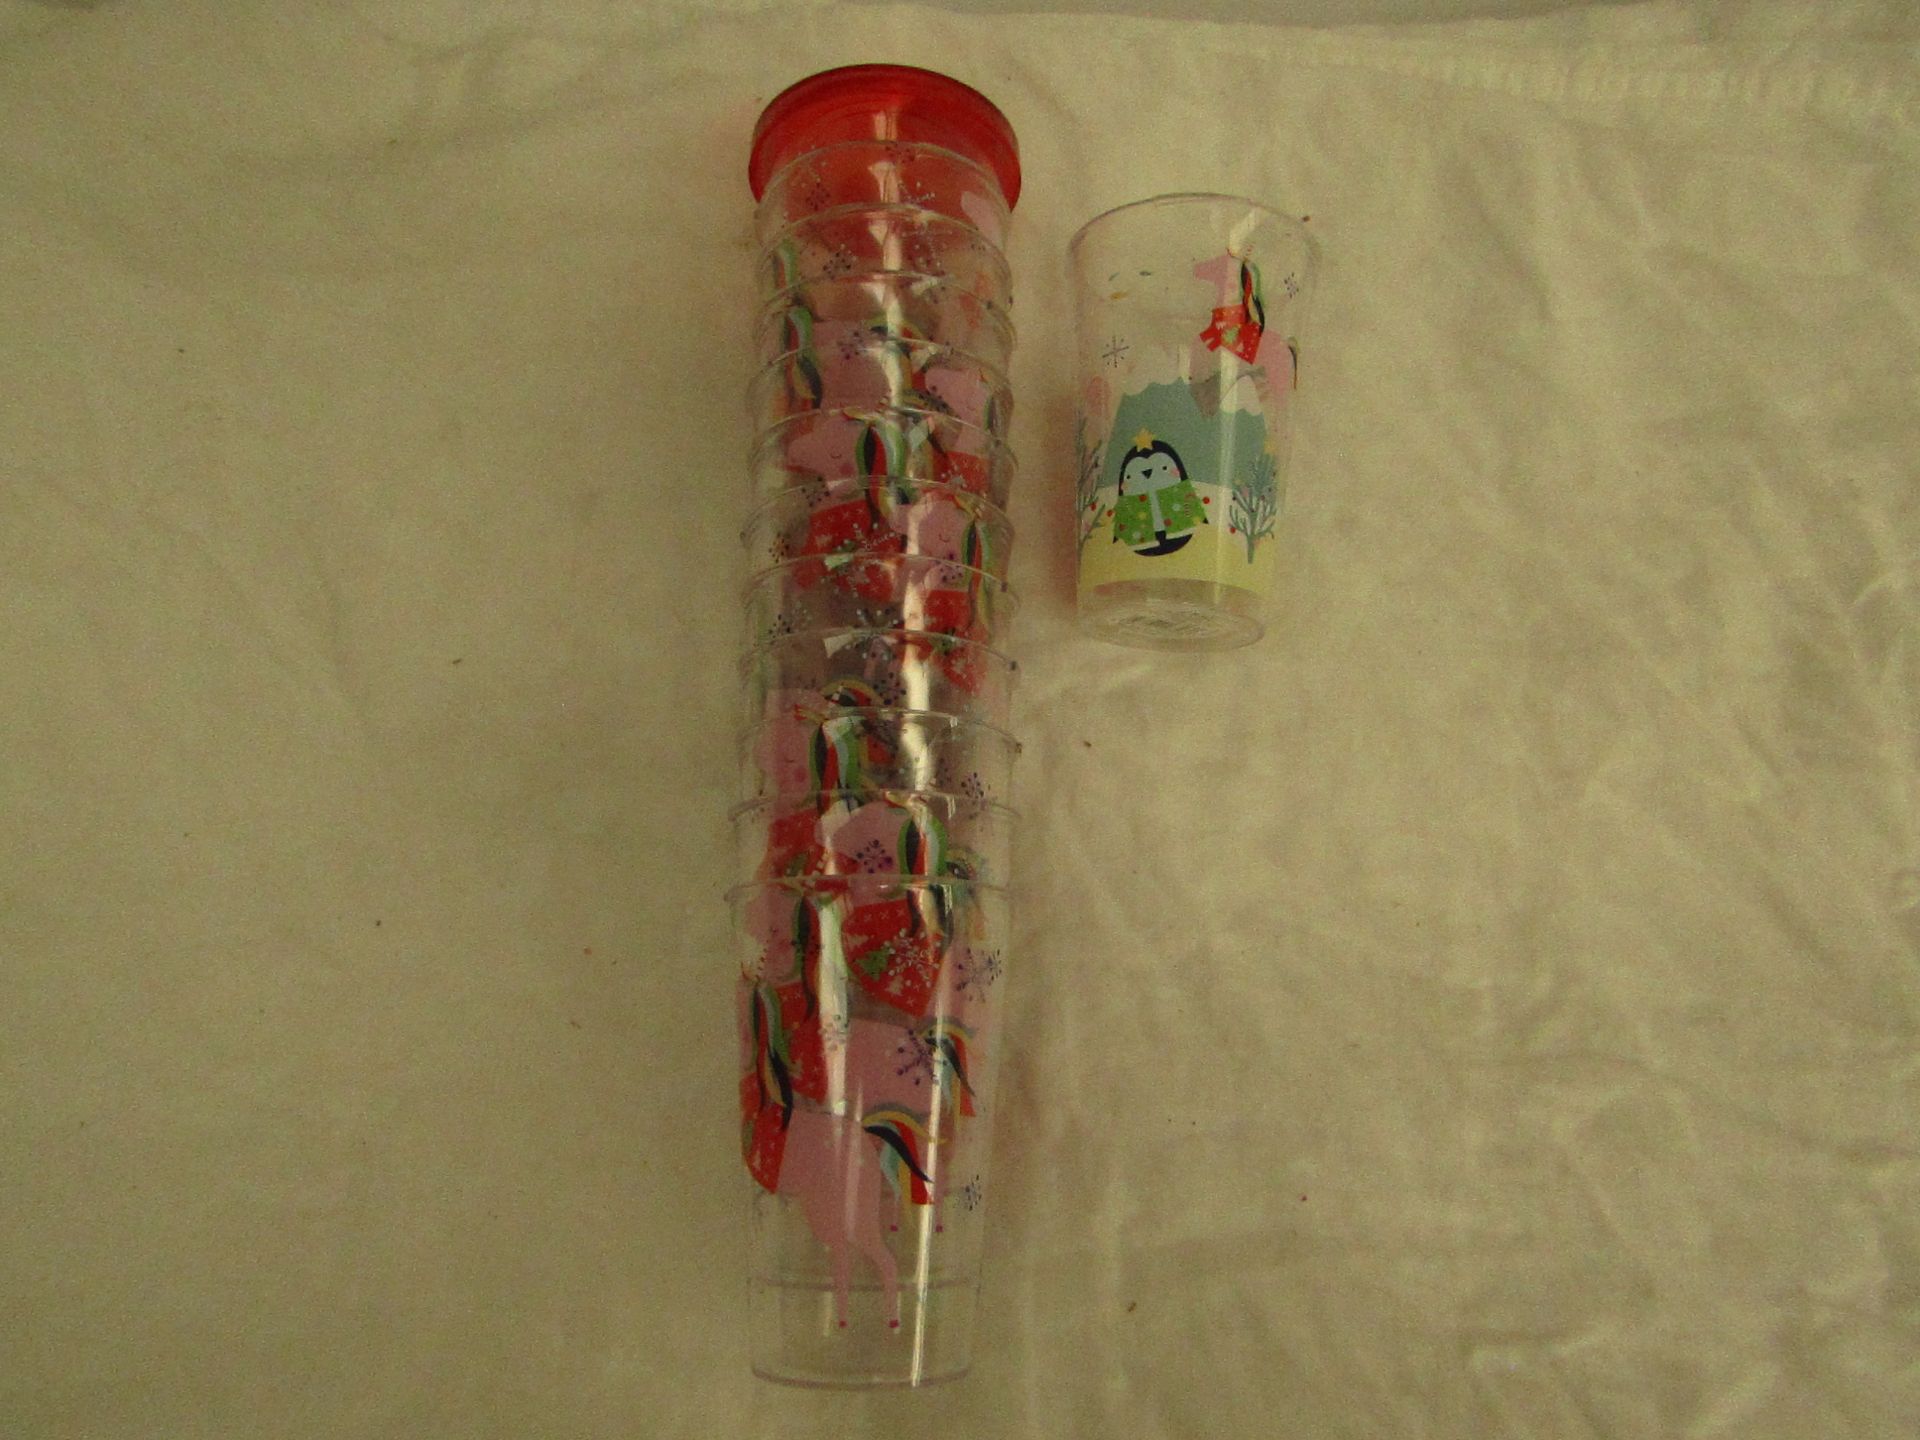 13x Unircorn - Plastic Cups - No Lids Present.